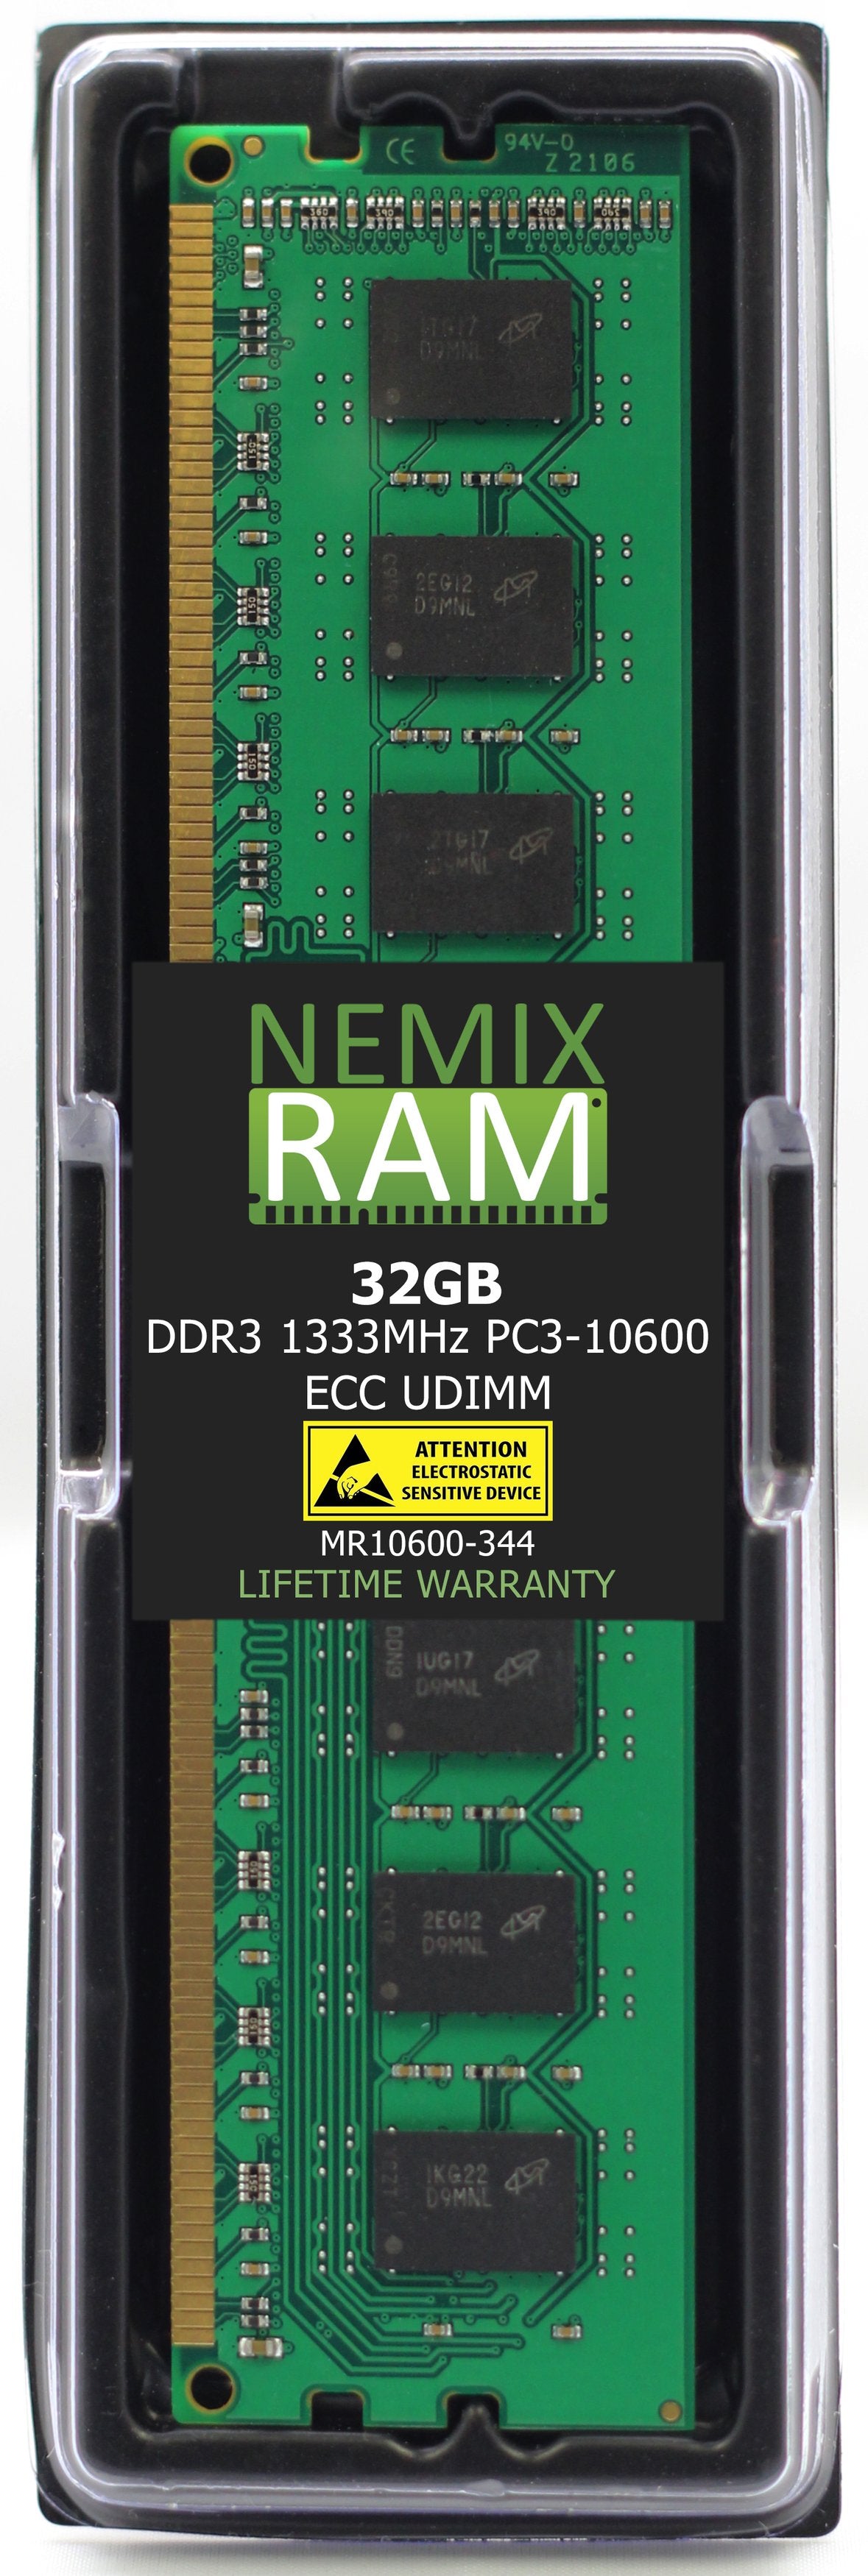 DELL SNPM9FKC/32G 32GB DDR3 1333MHZ PC3-10600 RDIMM Compatible Upgrade